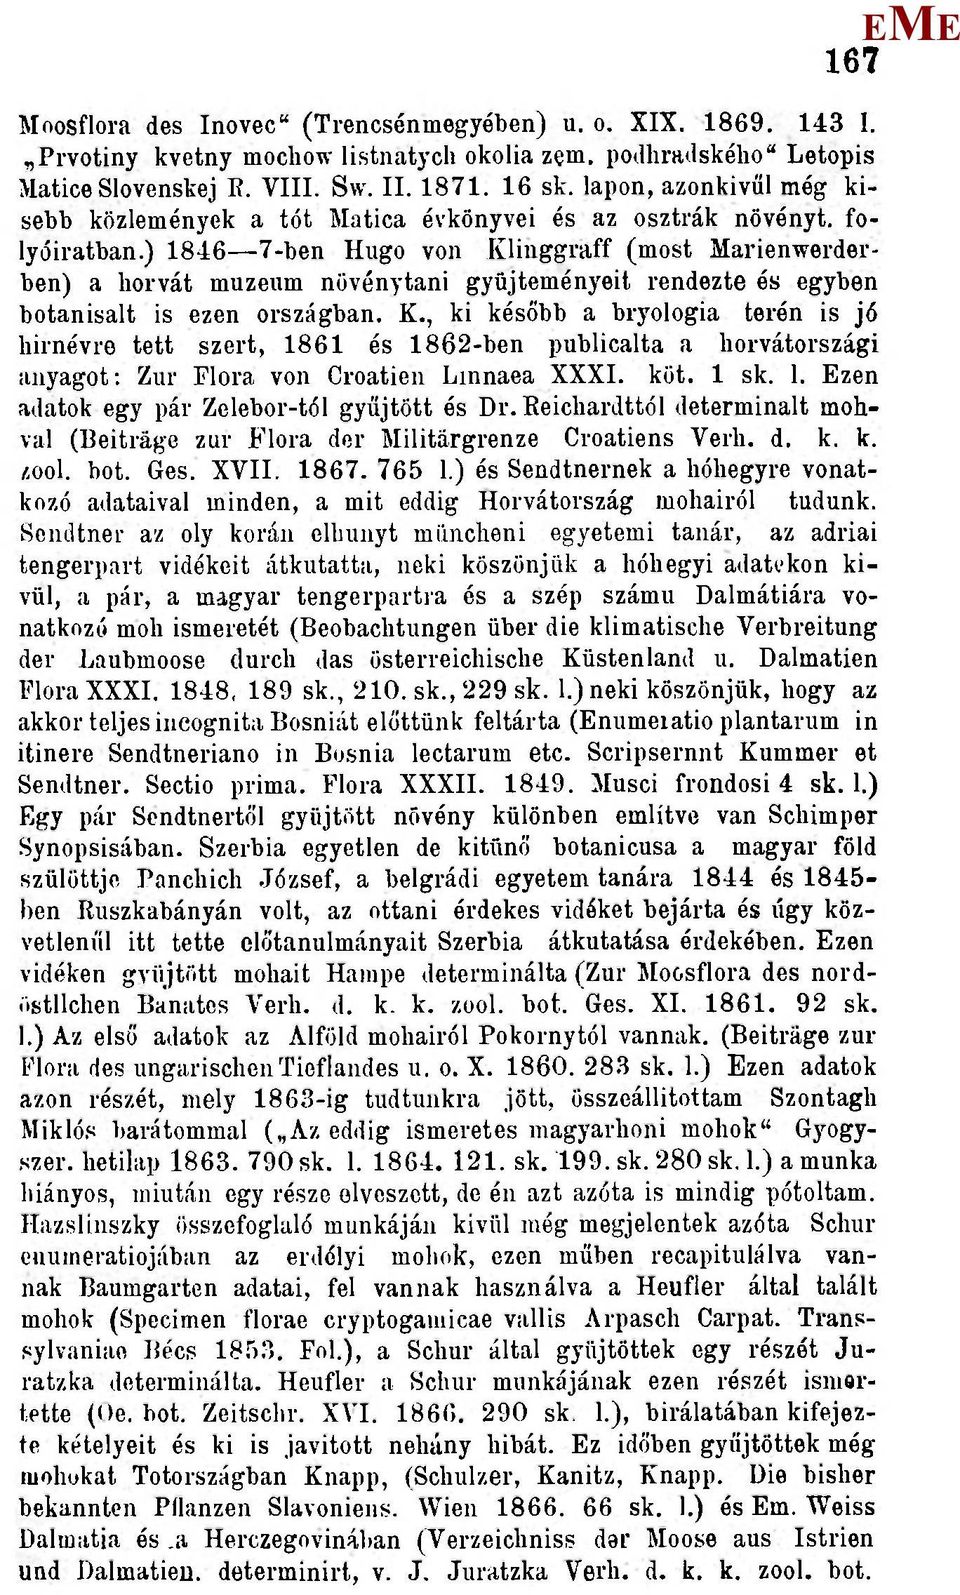 ) 1846 7-ben Hugó von Kliuggraff (most arienwerderben) a horvát muzenm növénytani gyűjteményeit rendezte és egyben botanisalt is ezen országban. K., ki később a bryologia terén is jő hírnévre tett szert, 1861 és 1862-ben publícalta a horvátországi anyagot: Zur Flóra von Croatíen Linnaea XXXI.